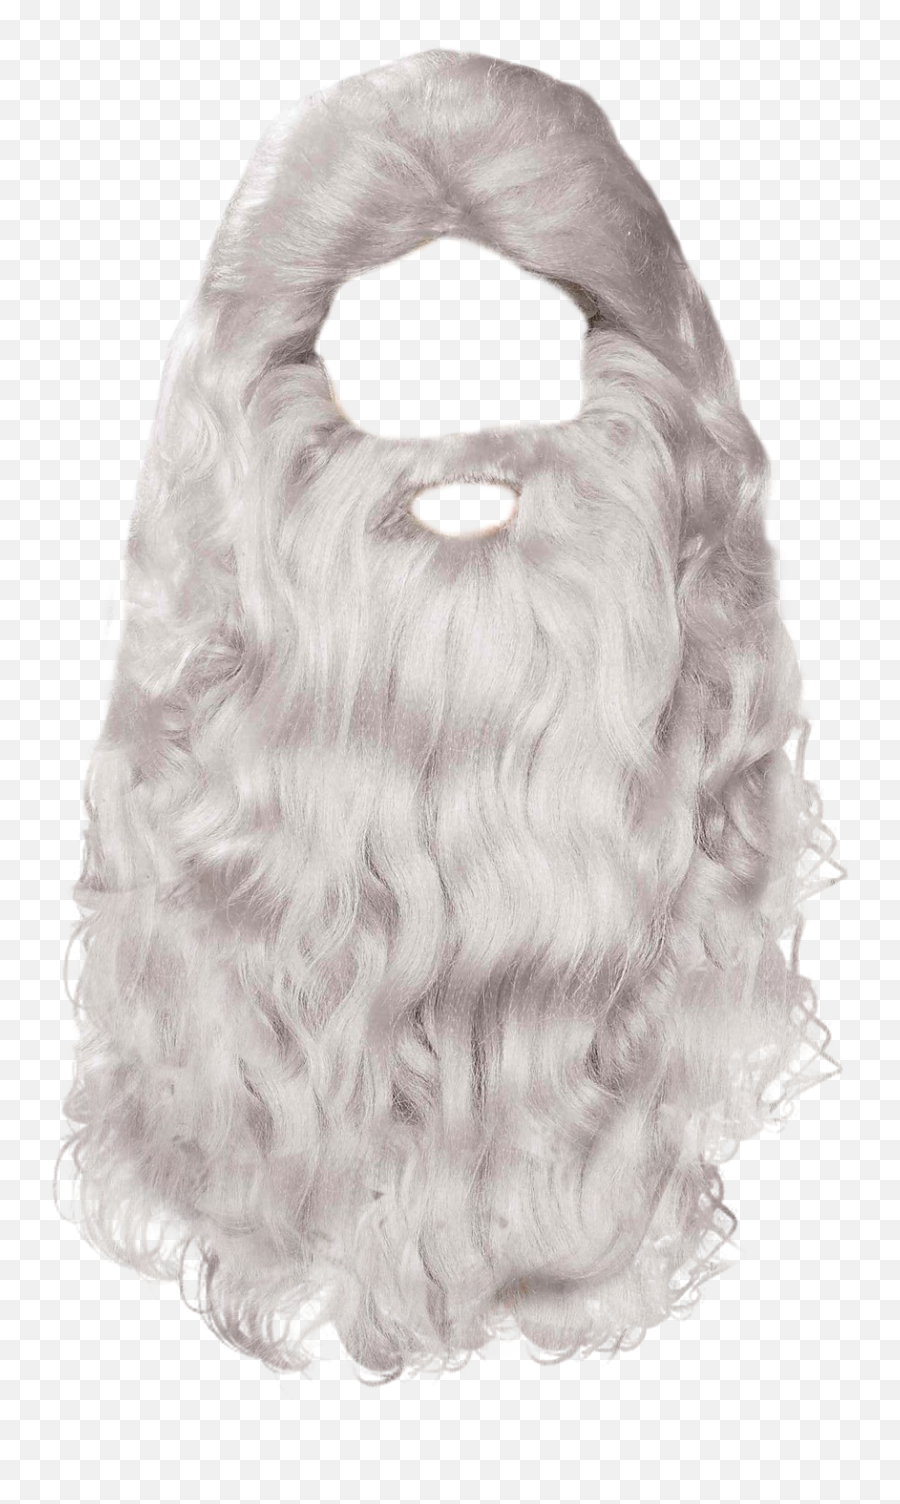 Gray Beard Png U0026 Free Beardpng Transparent Images - Christmas Beard Png,Cartoon Beard Png